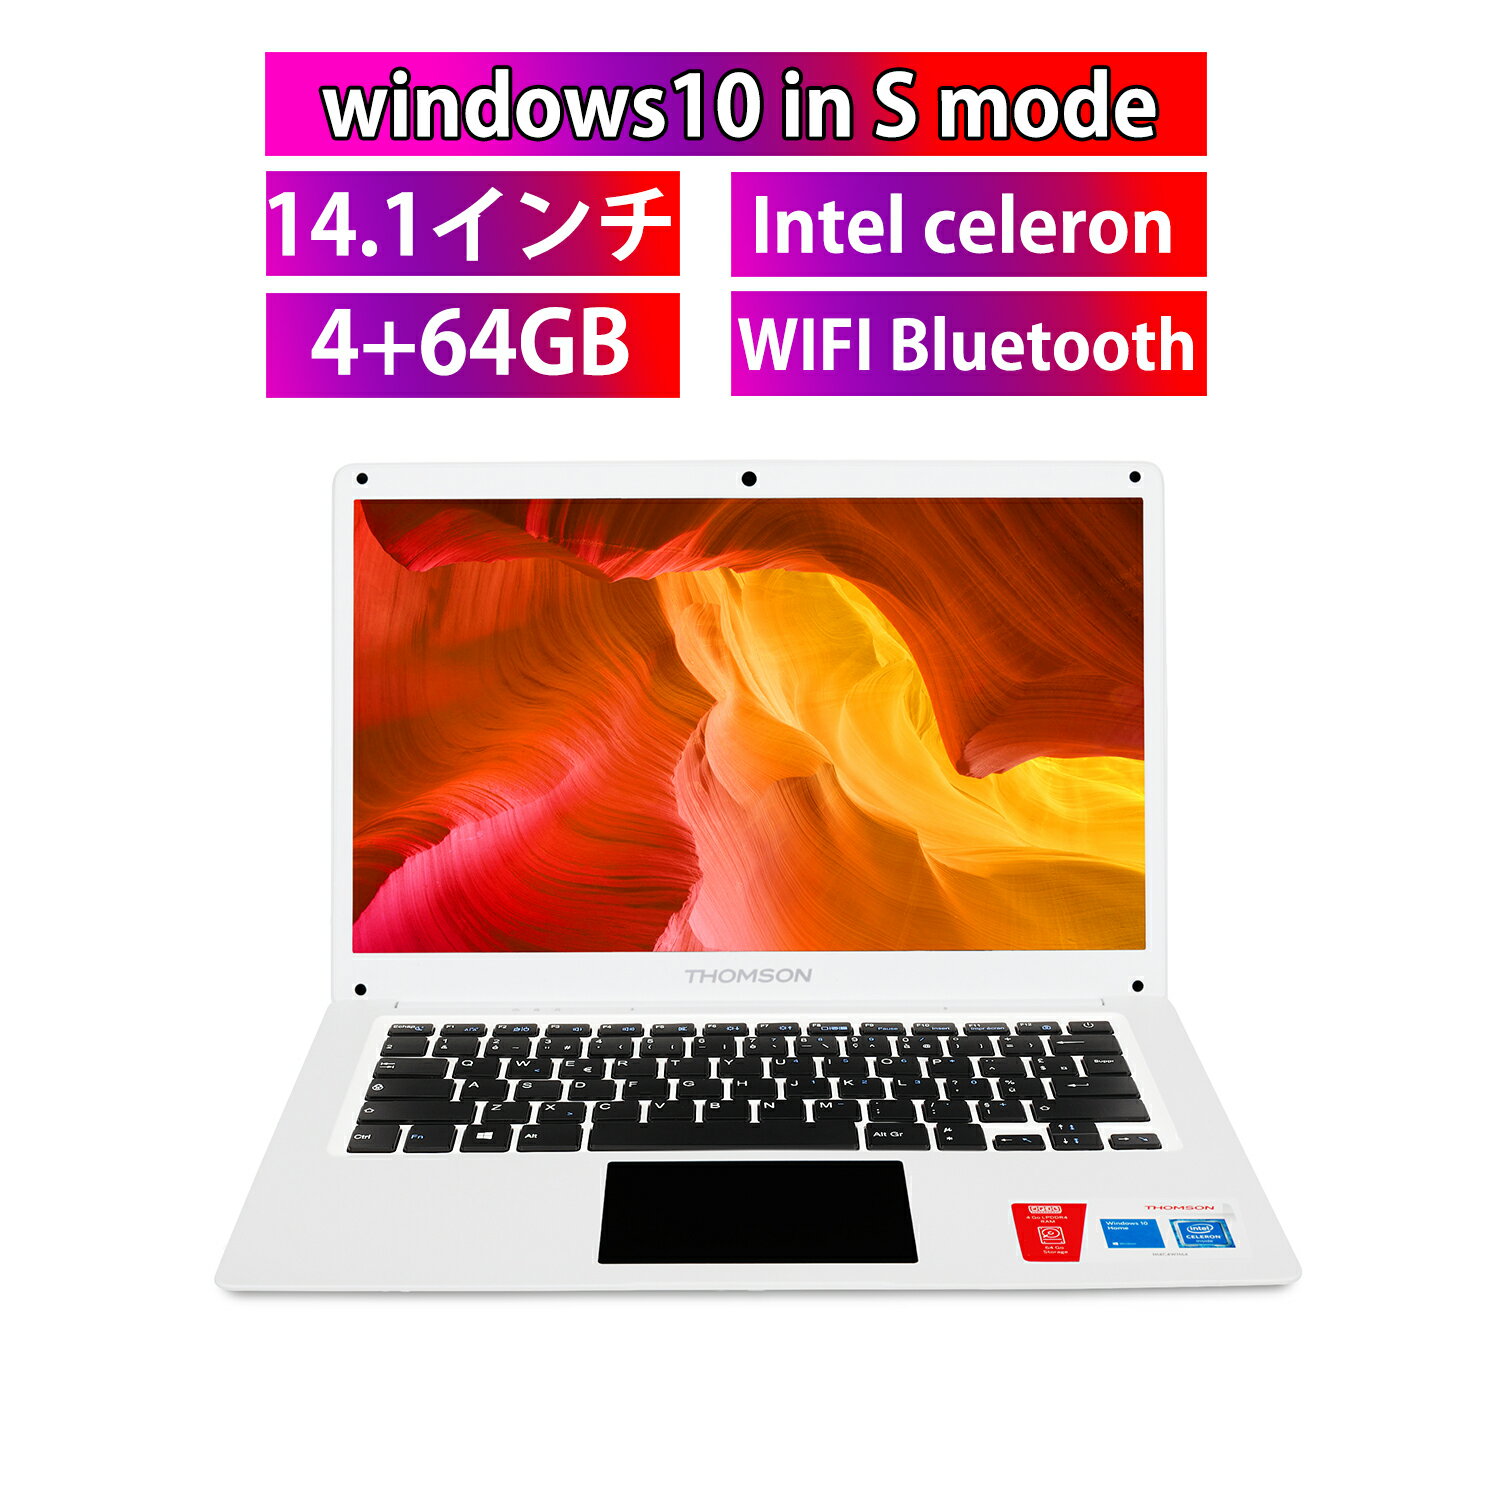 新品 ノートパソコン 14インチ Windows 10S 学生 学生用 4GBメモリ 64GBSSD 512GB増設可能 IPS 大画面 2.4GHz対応 14.1インチ WIFI Bluetooth 軽量 重さ1.15kg 薄型 Intel celeron PC 1366*736…